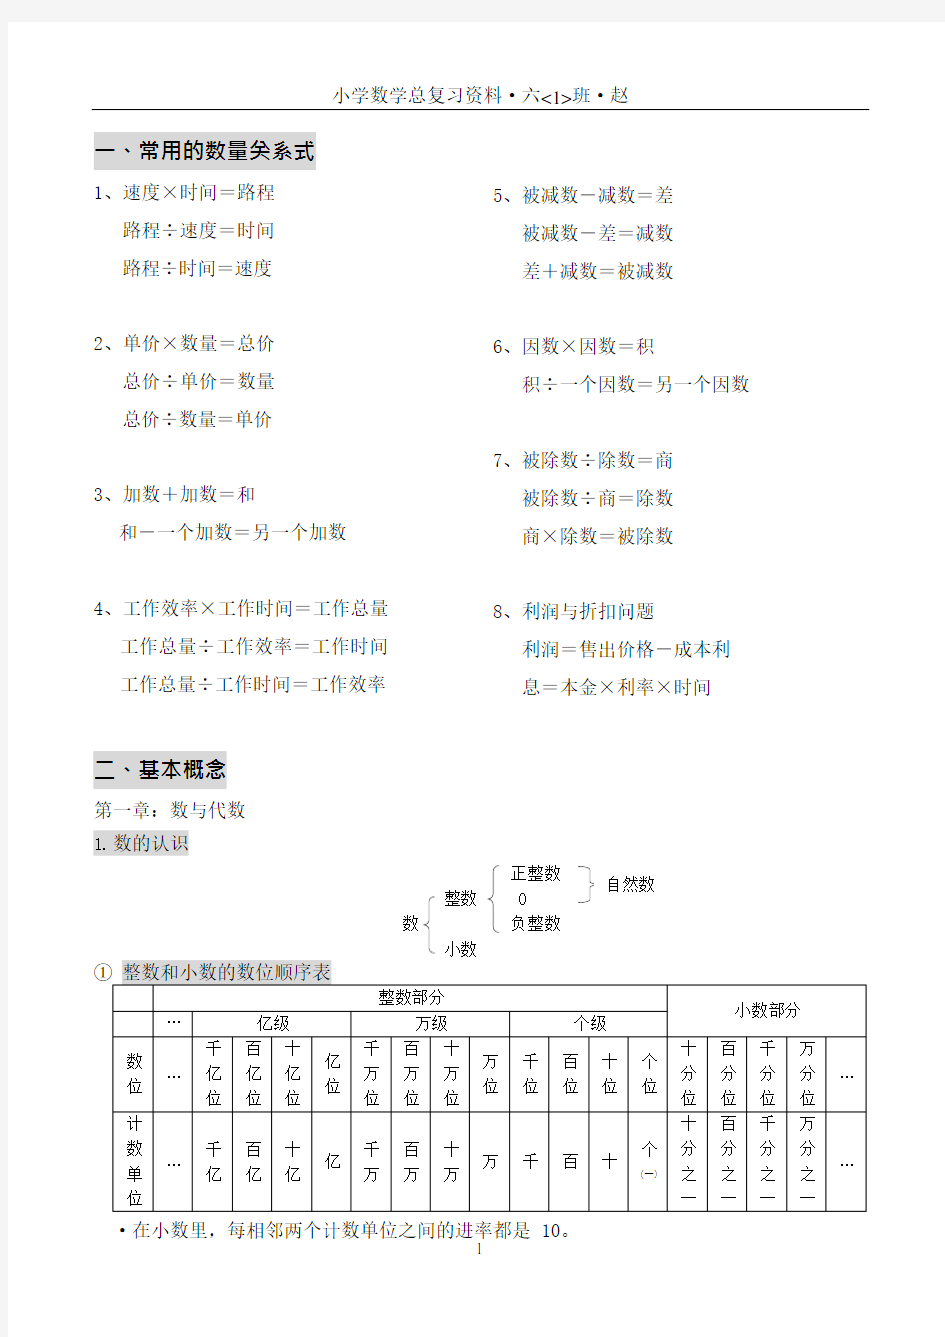 (完整版)北京版小学六年级数学知识点汇总剖析,推荐文档